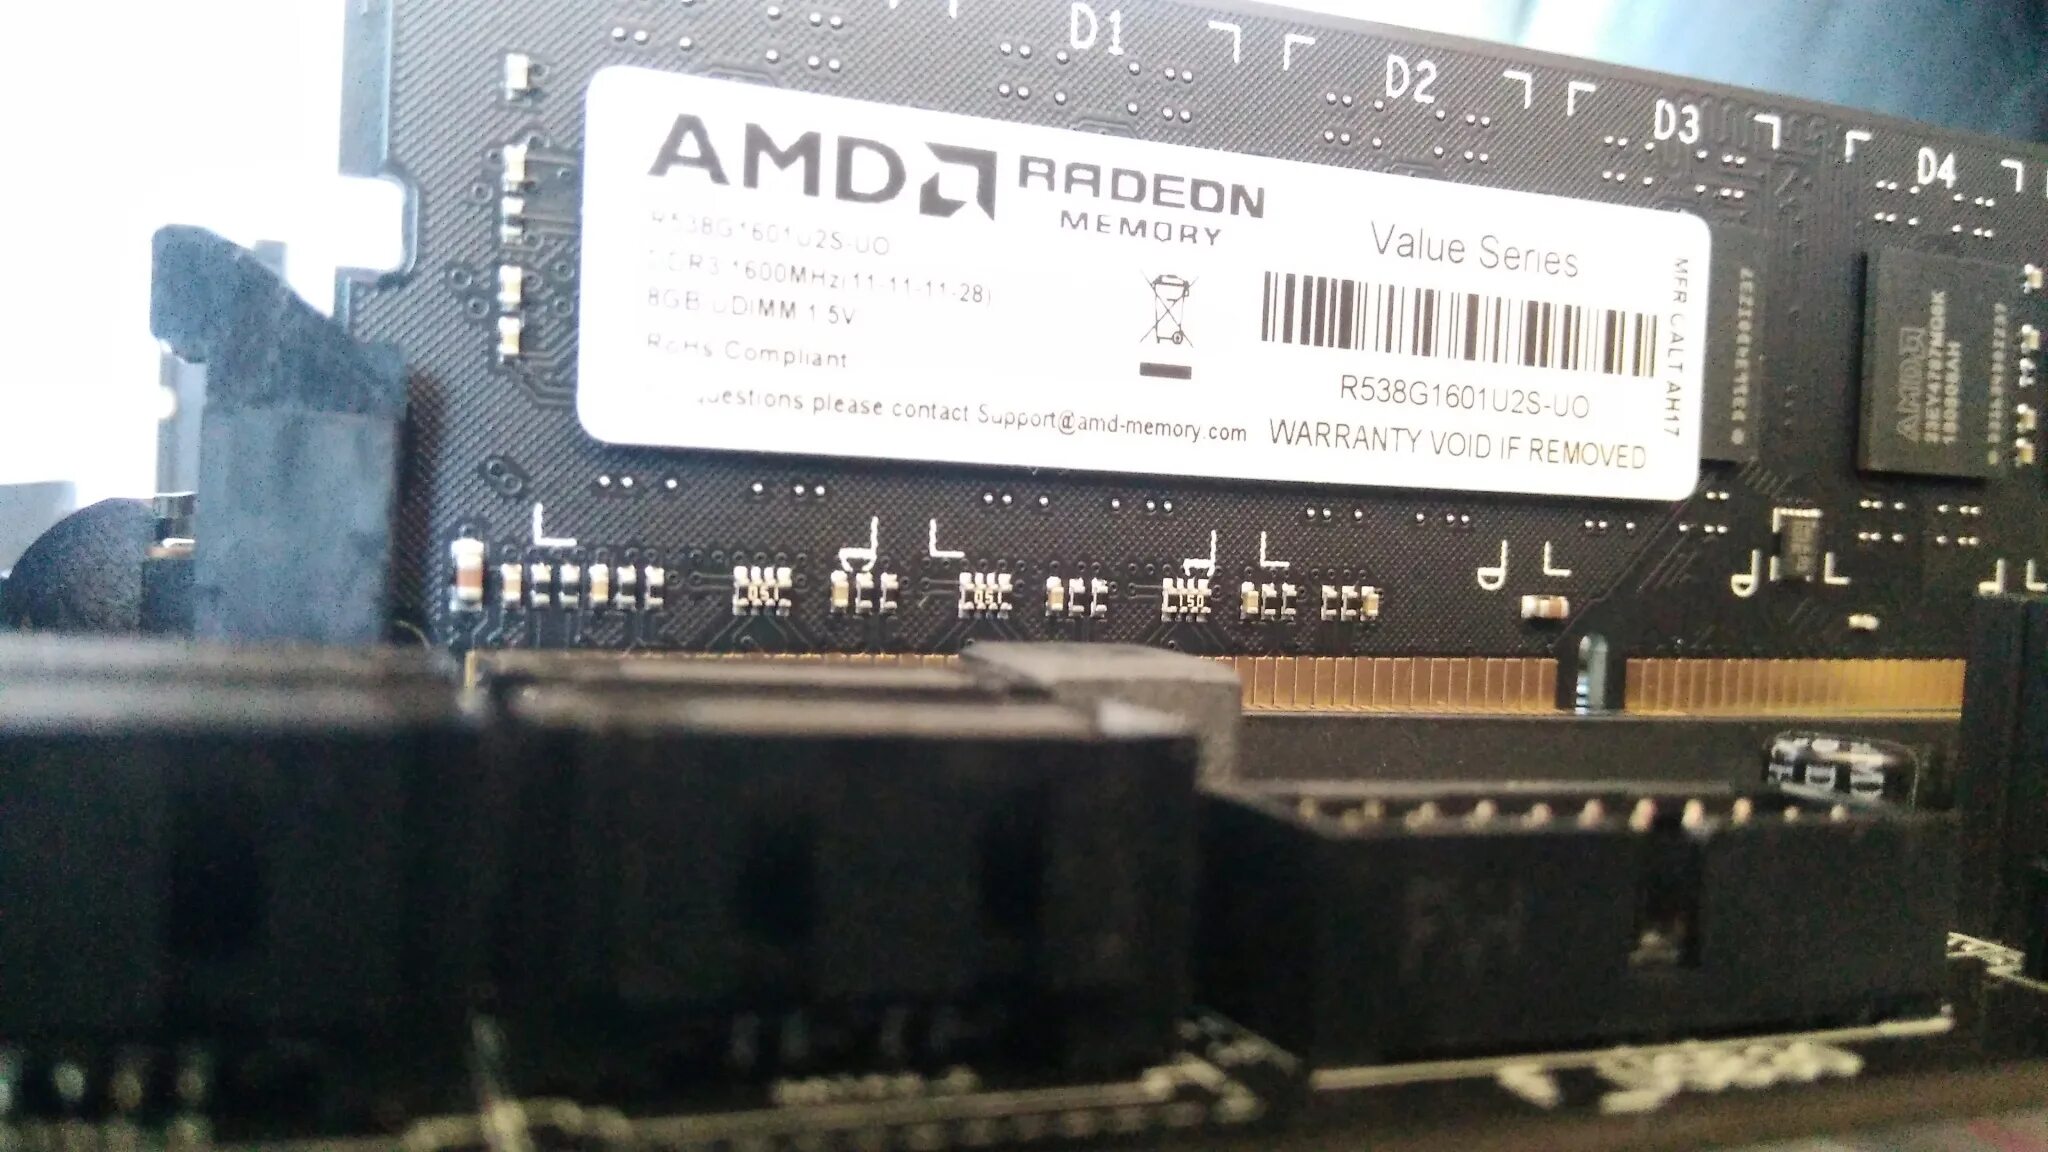 AMD r538g1601s2s-u ddr3 - 8гб. Модуль памяти AMD r538g1601u2s-uo Black ddr3 - 8гб 1600. Оперативная память AMD Radeon r5 Entertainment Series [r538g1601u2s-u] 8 ГБ. AMD Radeon ddr3 8gb (r5s38g1601u2s).